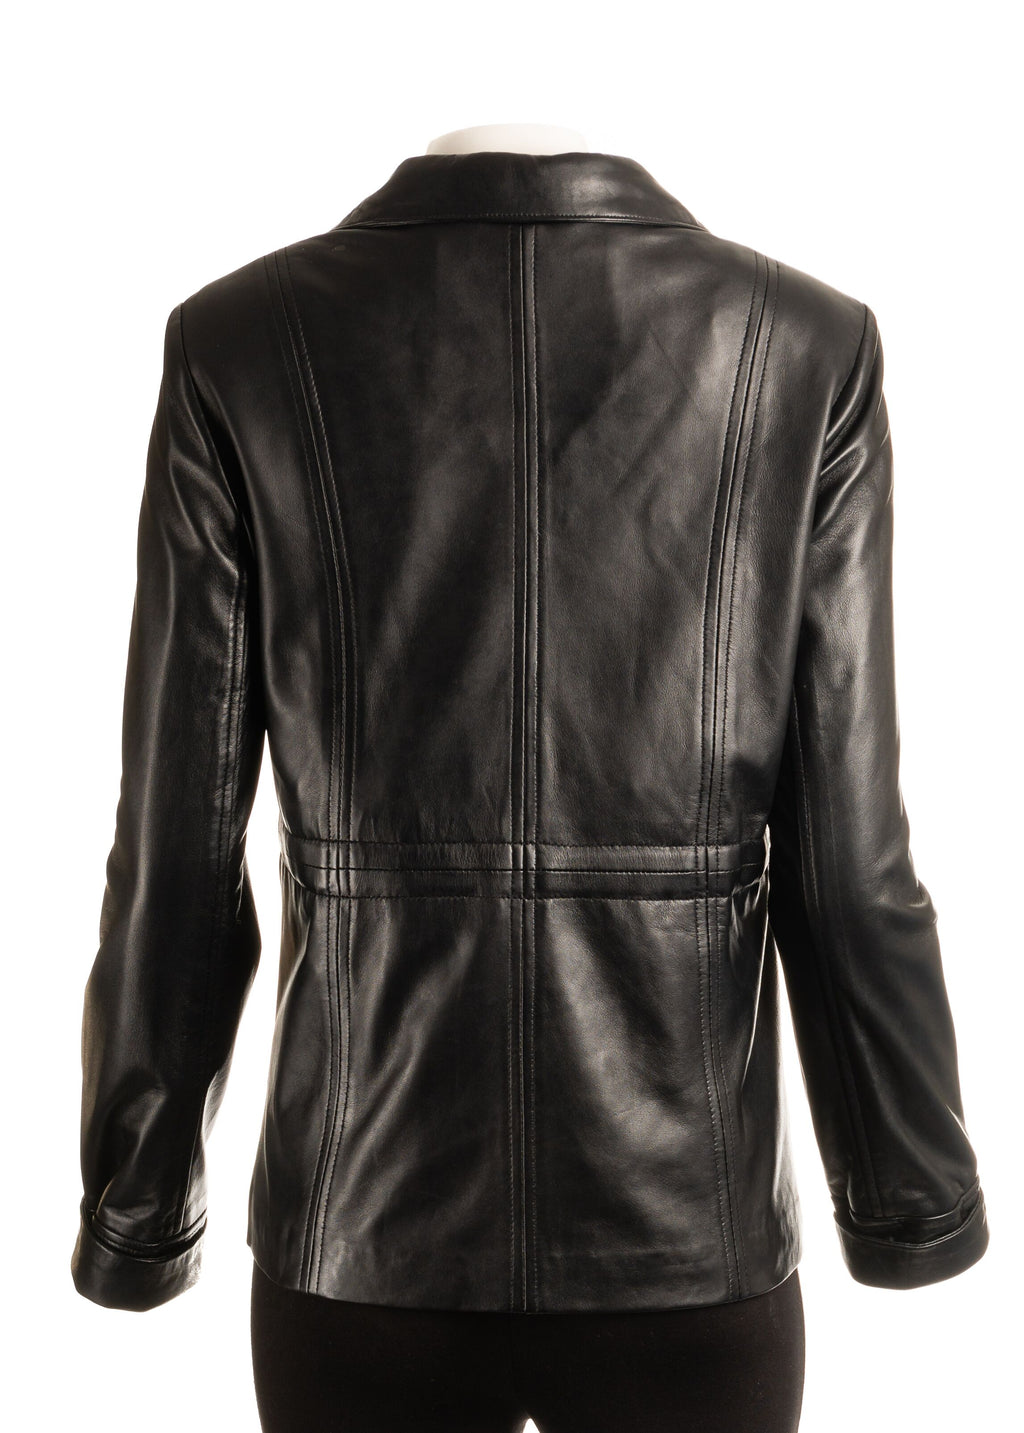 Ladies Black Hip Length Toggle Waist Leather Jacket: Berta